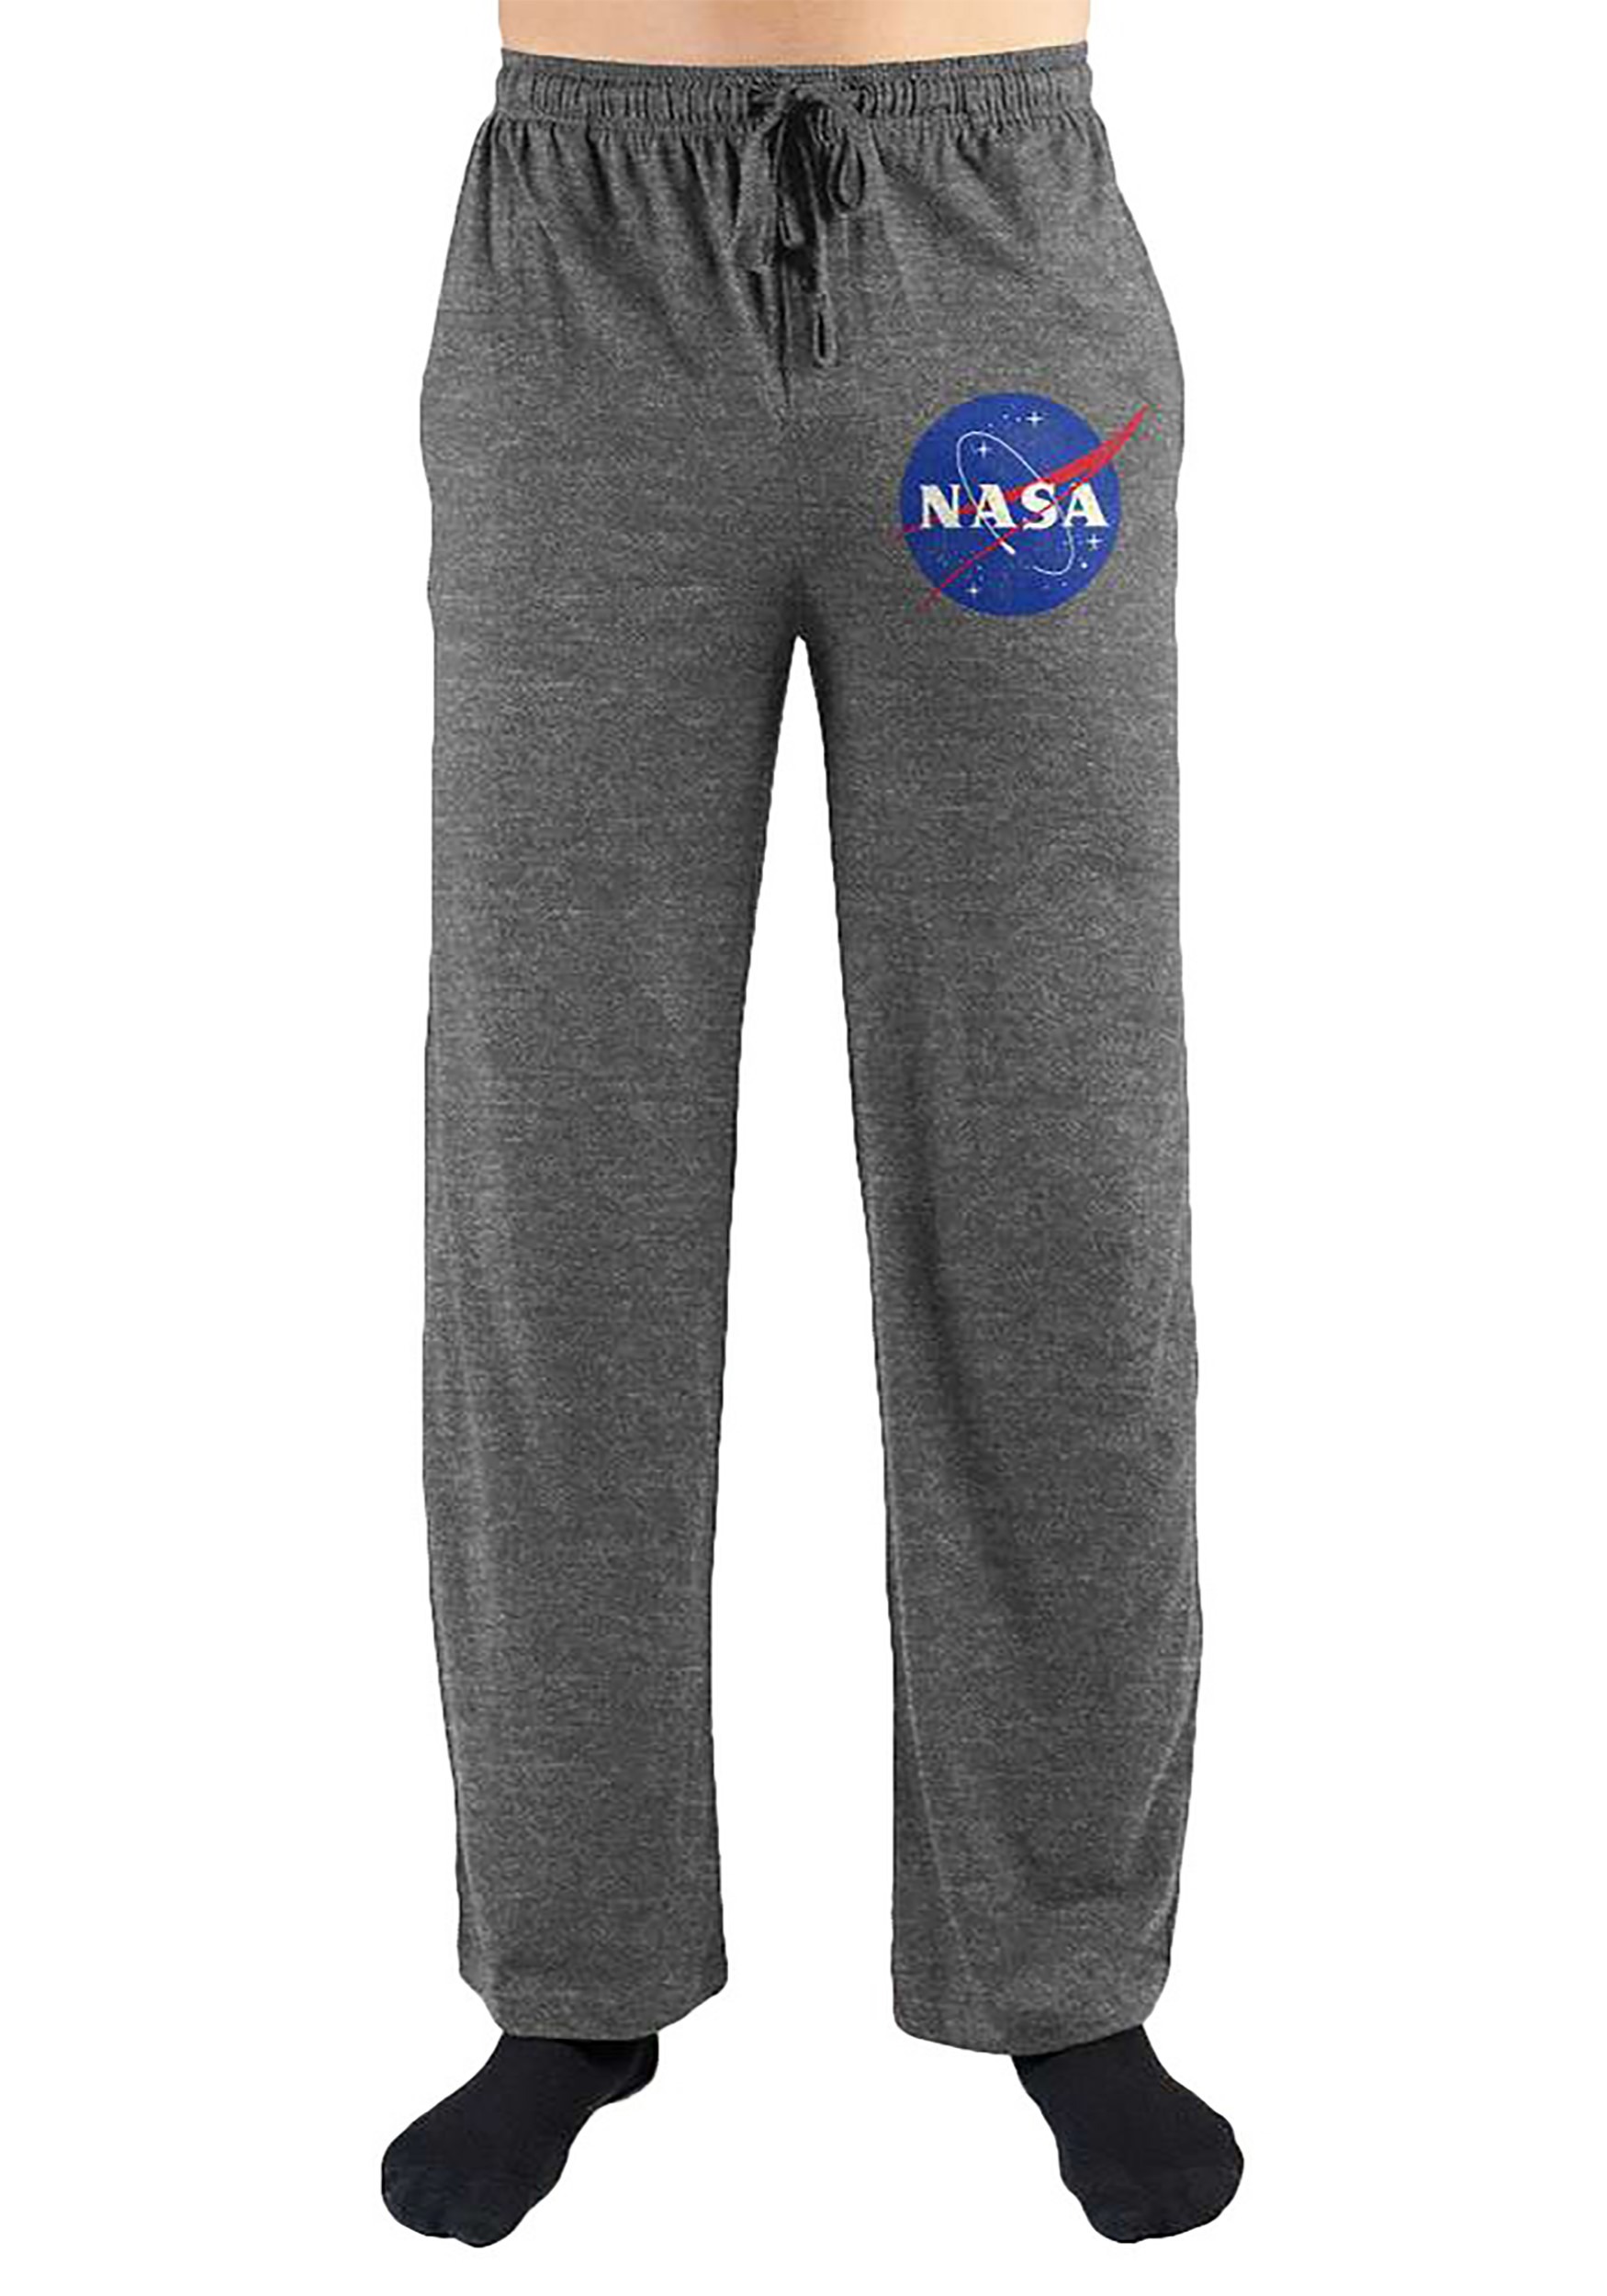 NASA Gray Adult Sleep Pants